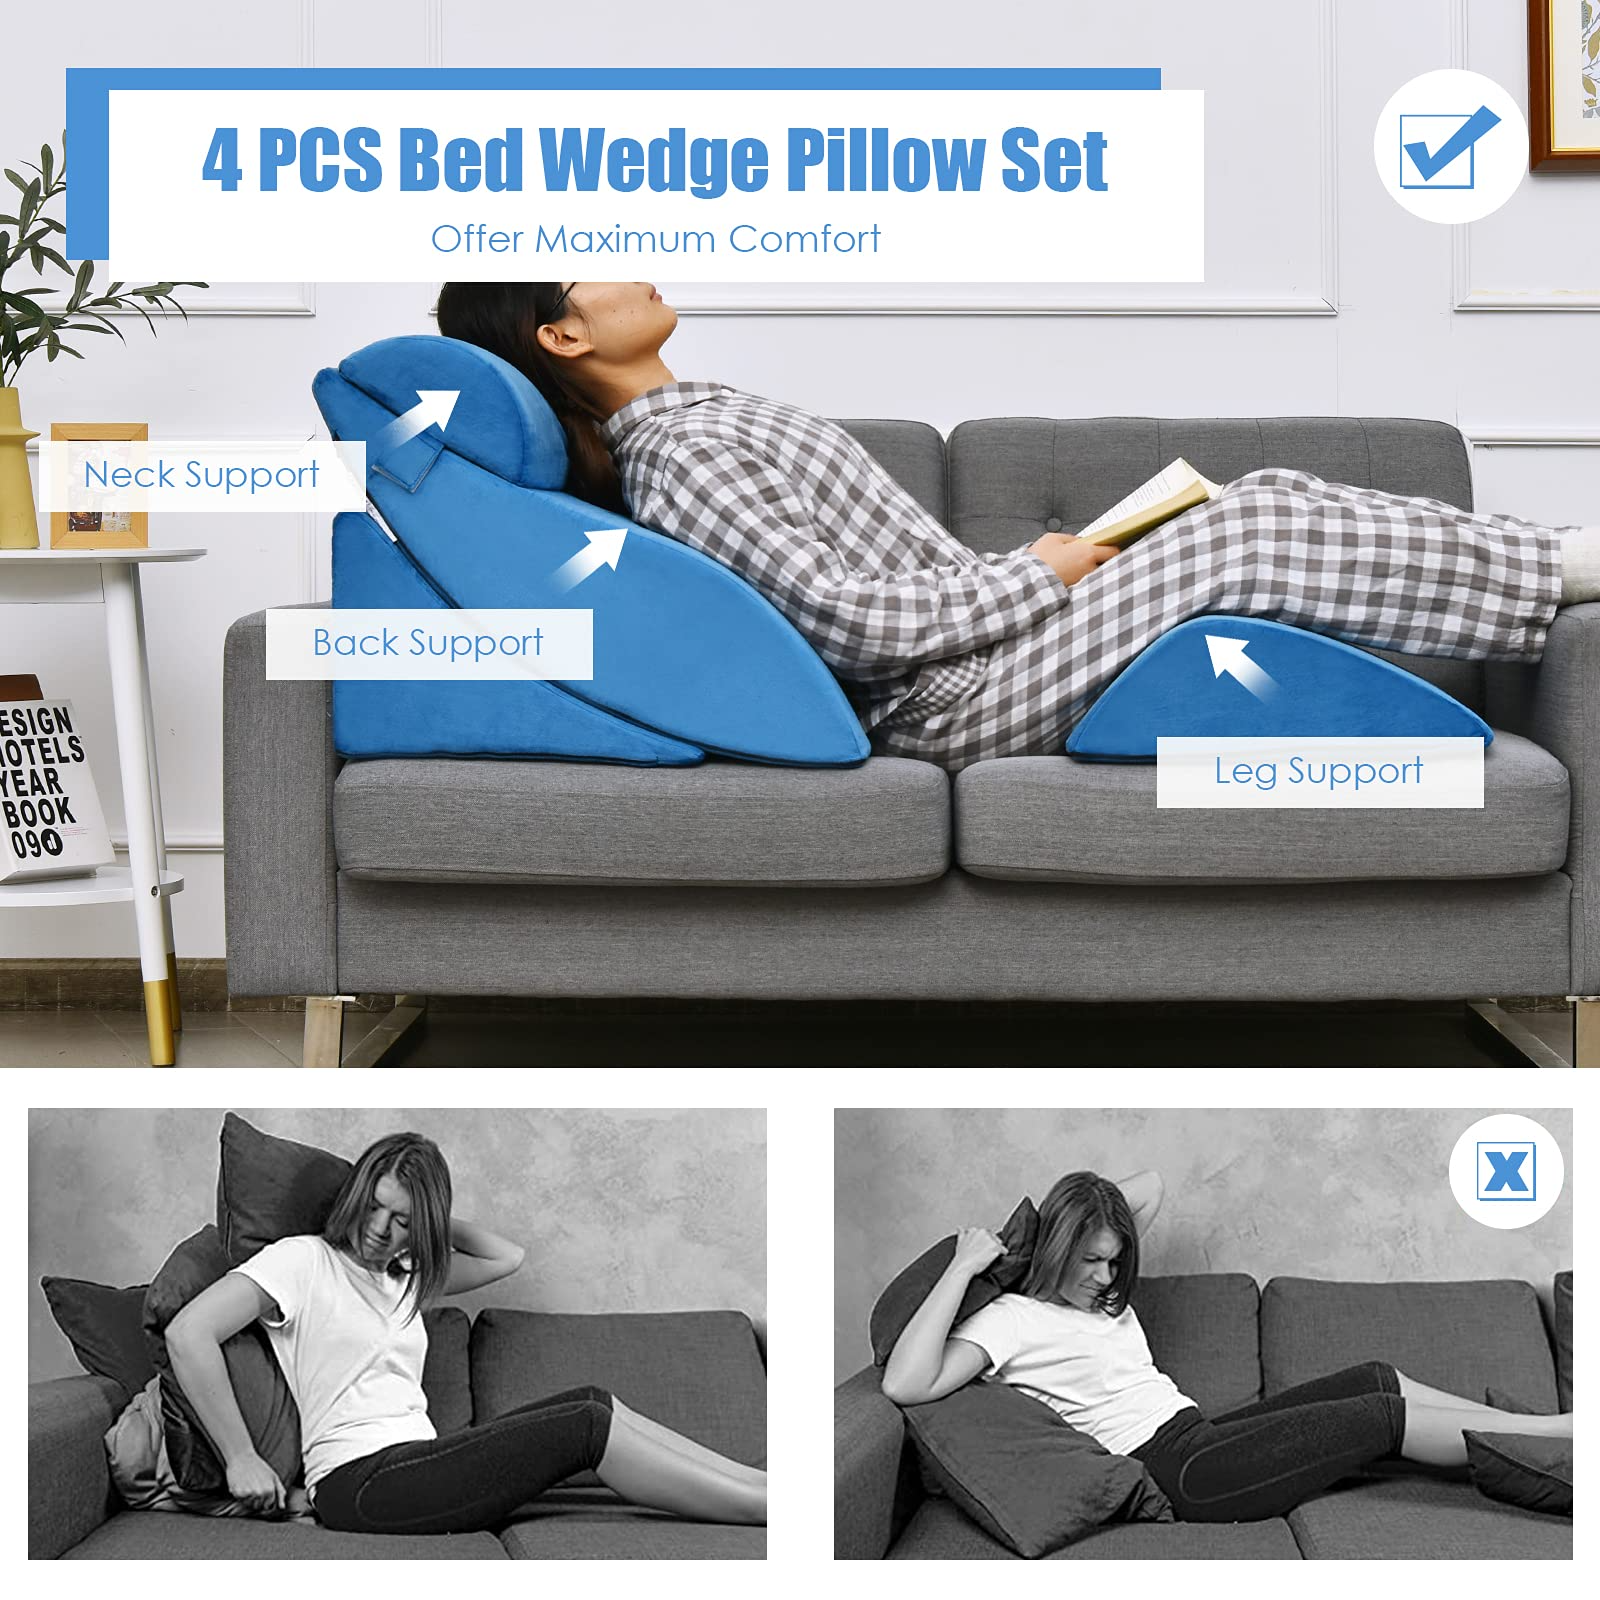 4 PCS Wedge Pillow Set - Giantex